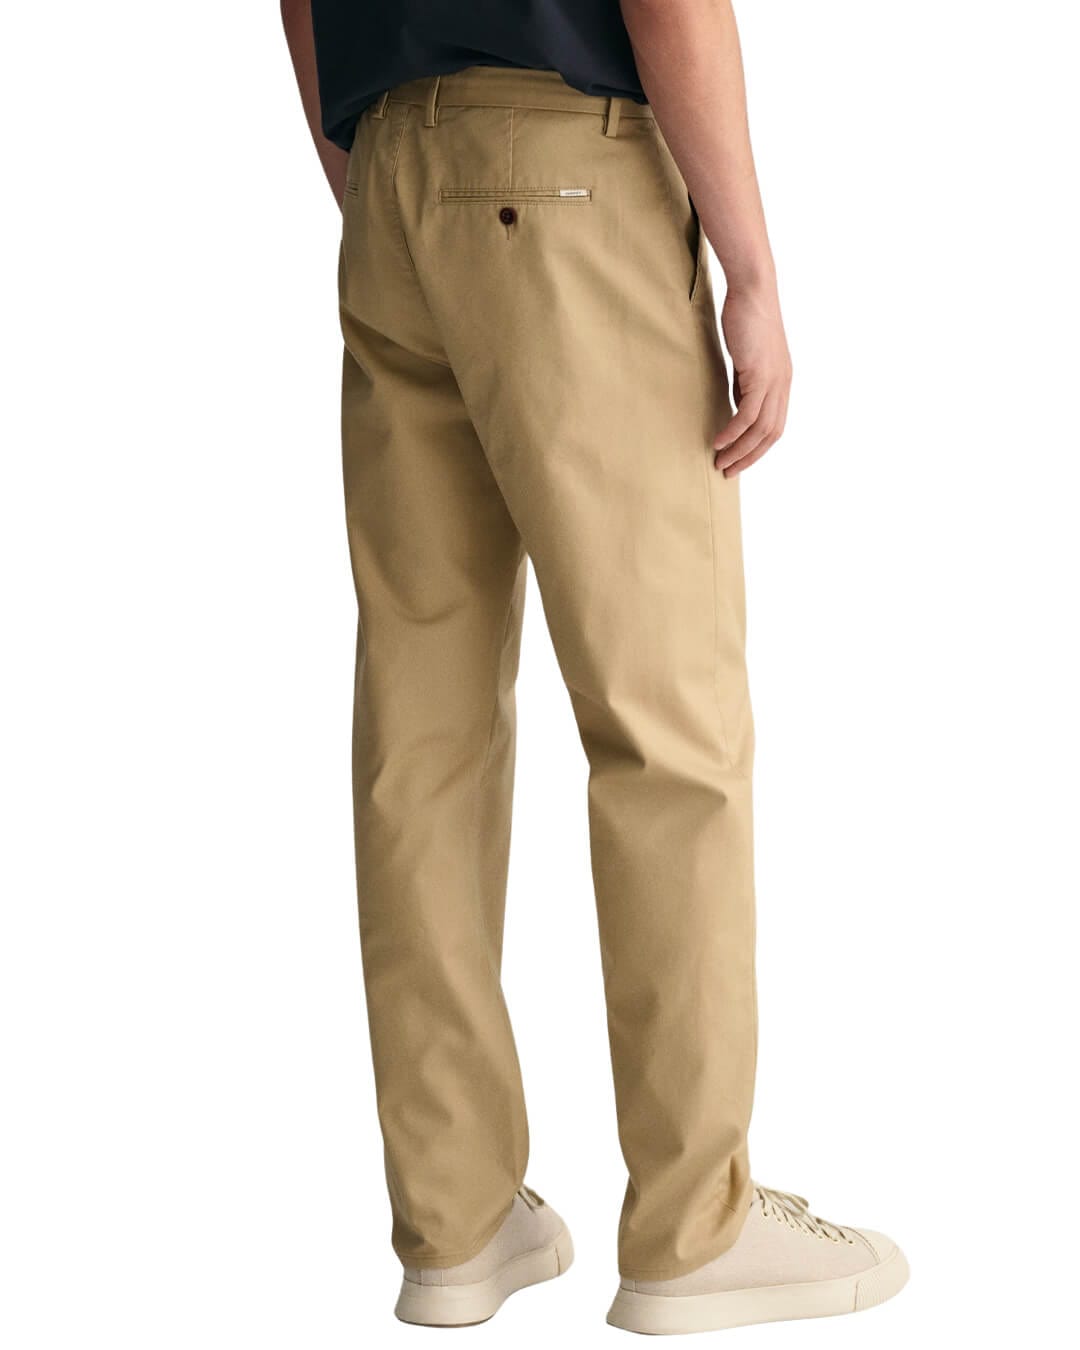 Gant Trousers REGULAR CHINOS G0248 DARK KHAKI